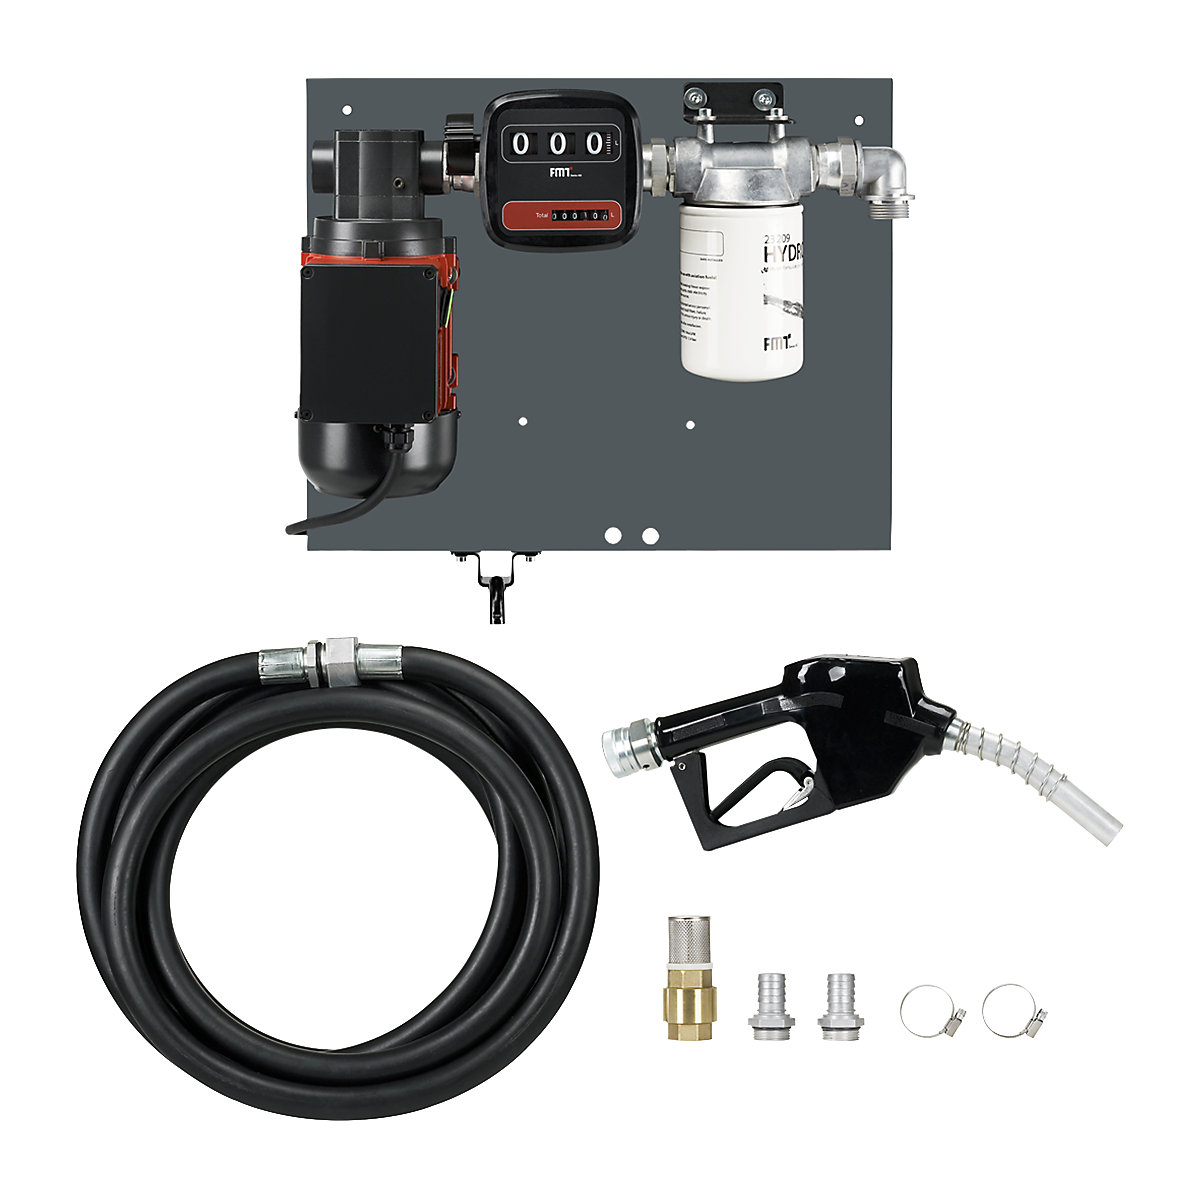 Vane pump for heating oil/diesel – PRESSOL